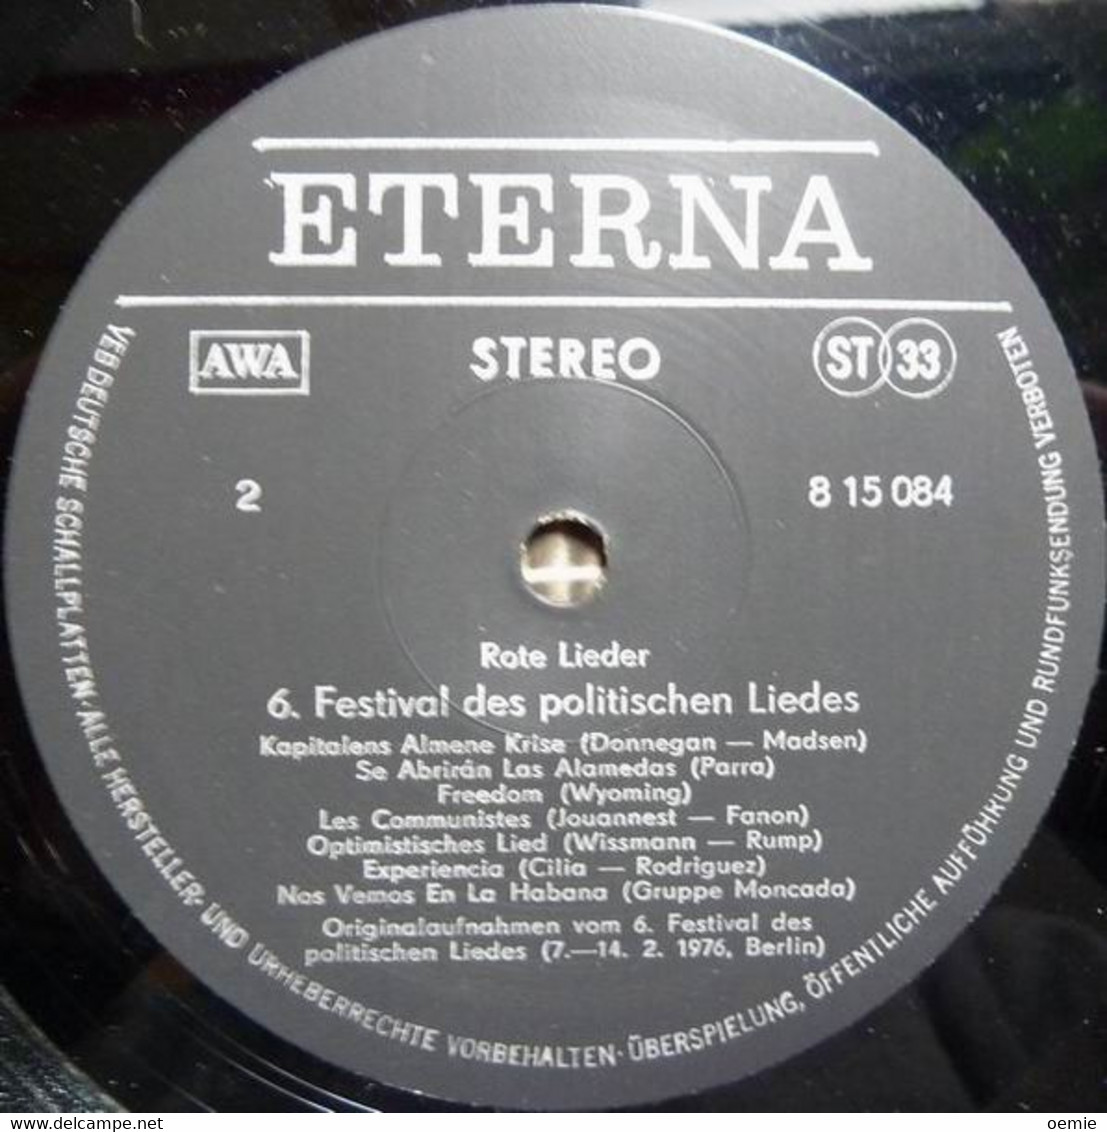 ROTE  LIEDER  °  BERLIN  7 / 14 2 / 1976  °  6 FESTIVAL  DES POLITISCHEN  LIEDES - Sonstige - Deutsche Musik